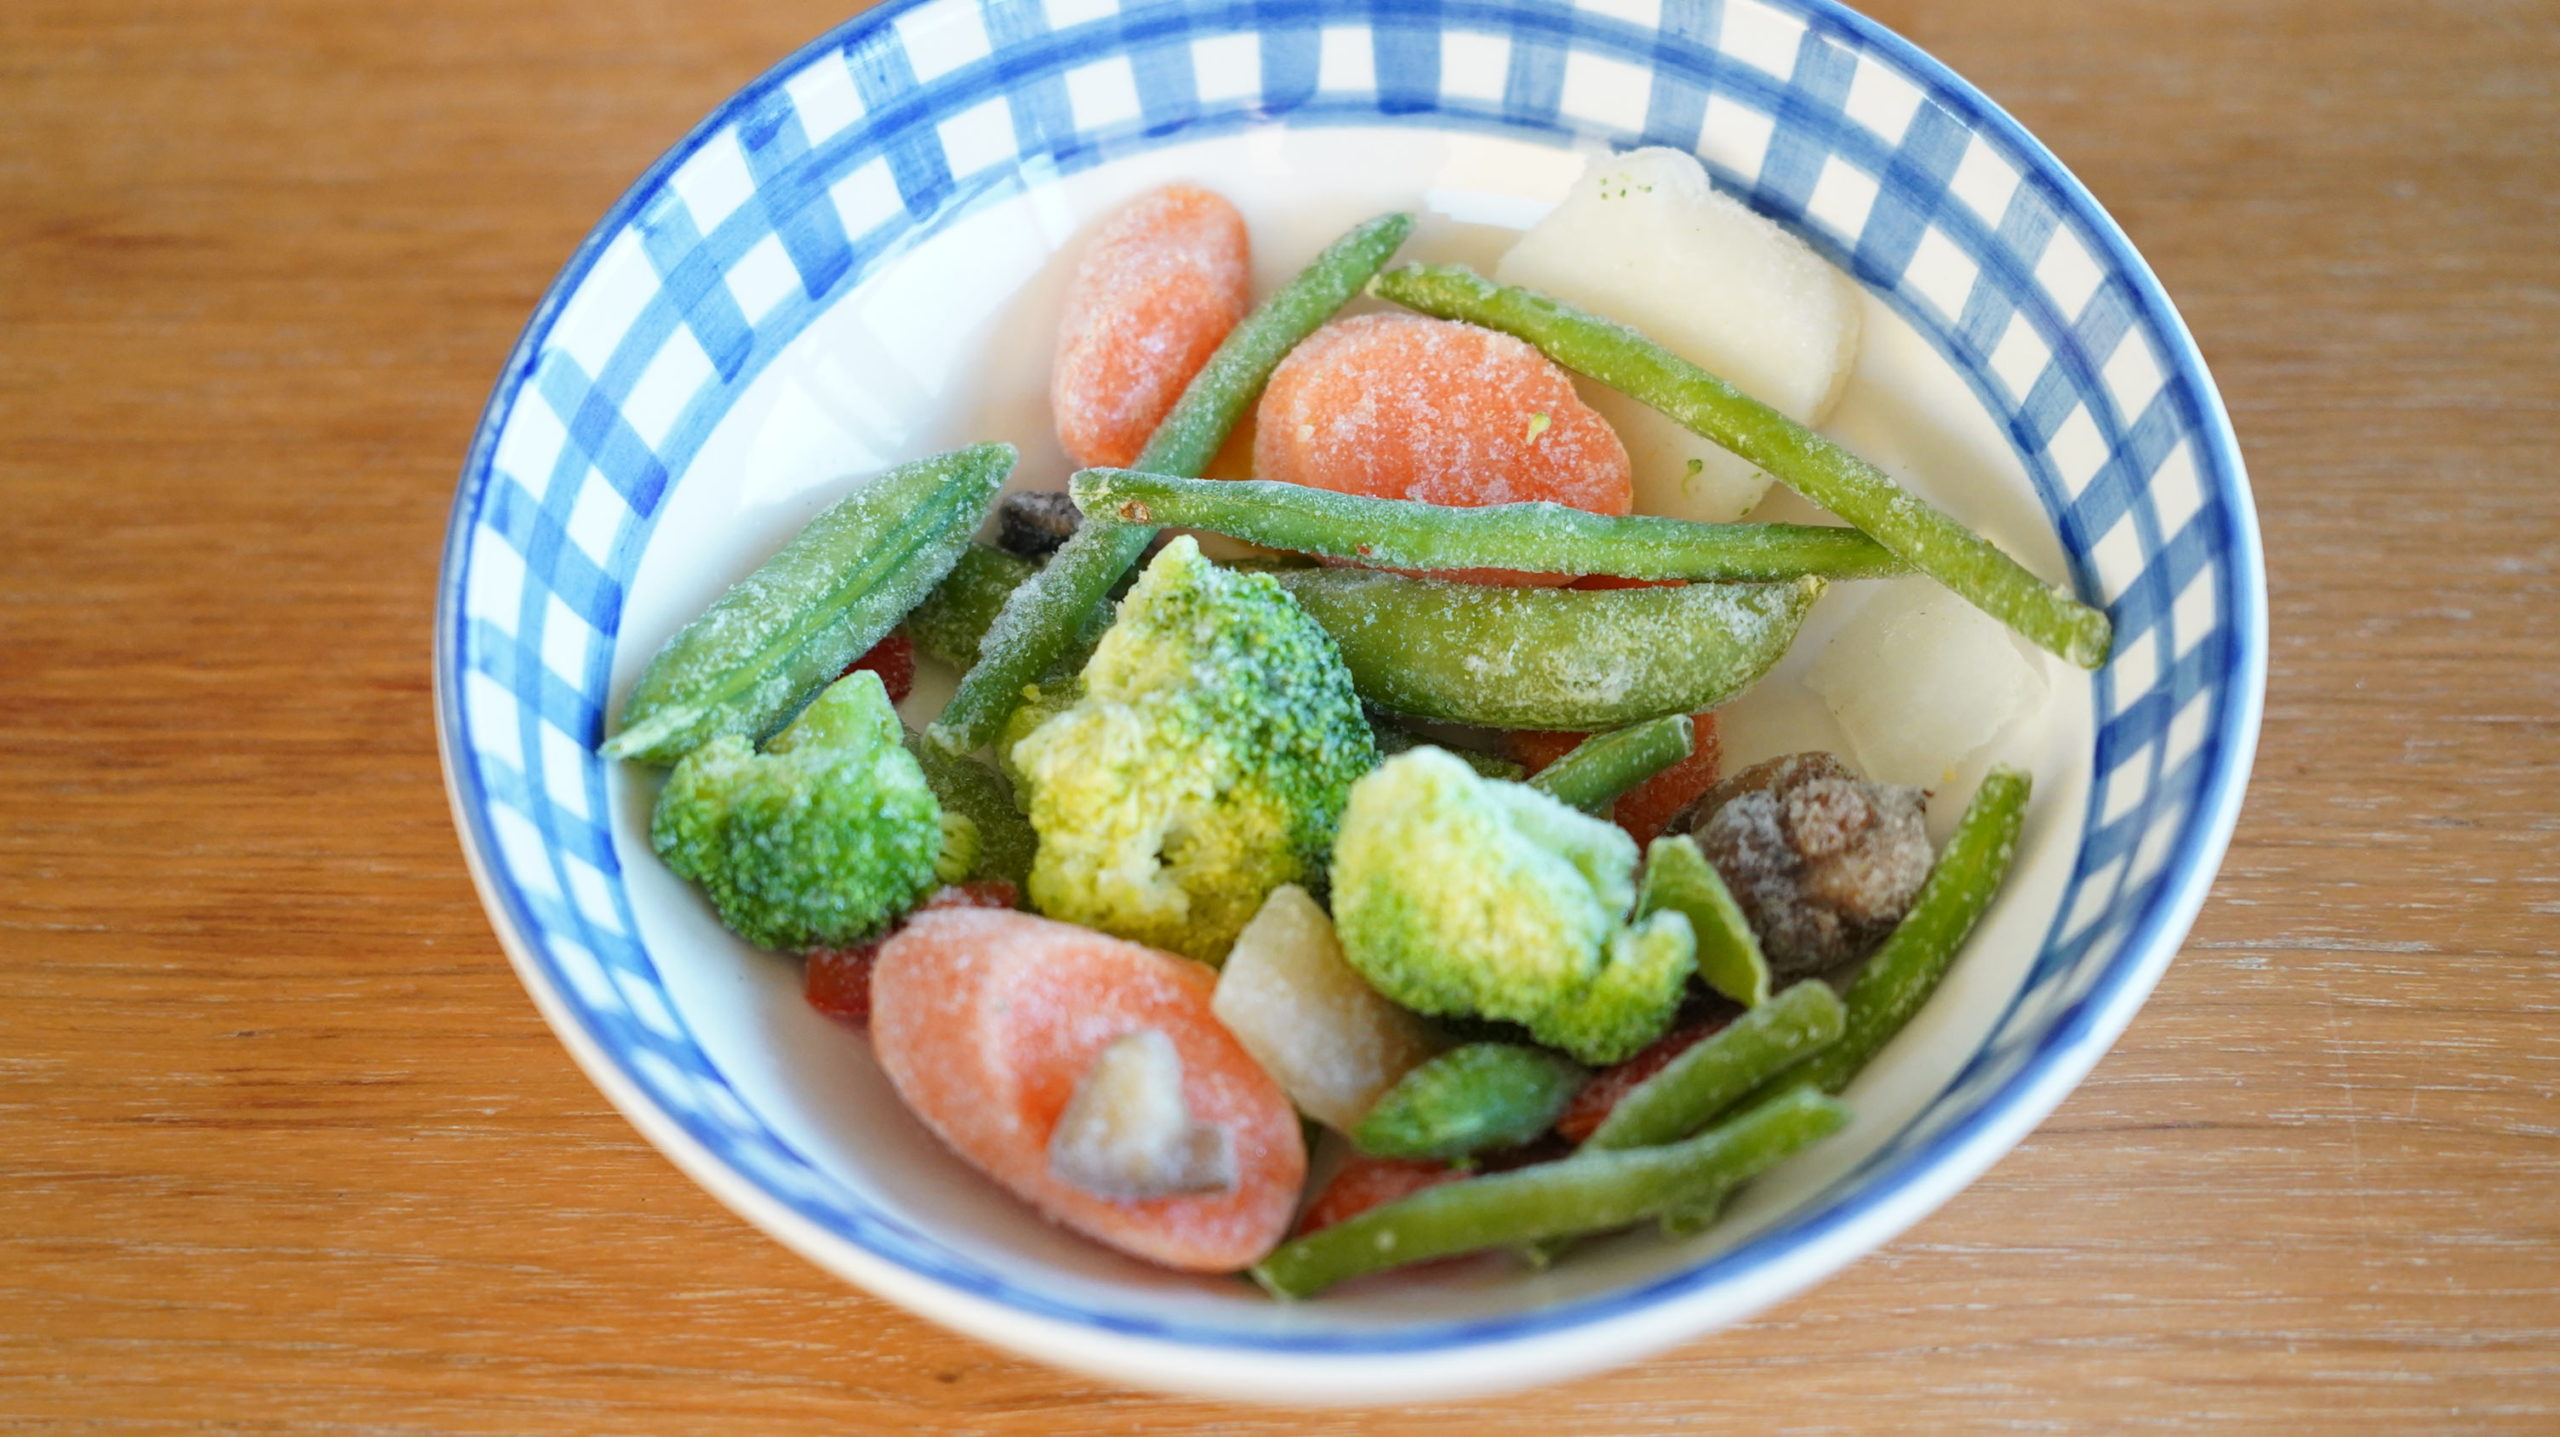 コストコのおすすめ冷凍食品「カークランド ステアフライ ベジタブルブレンド」の野菜の写真